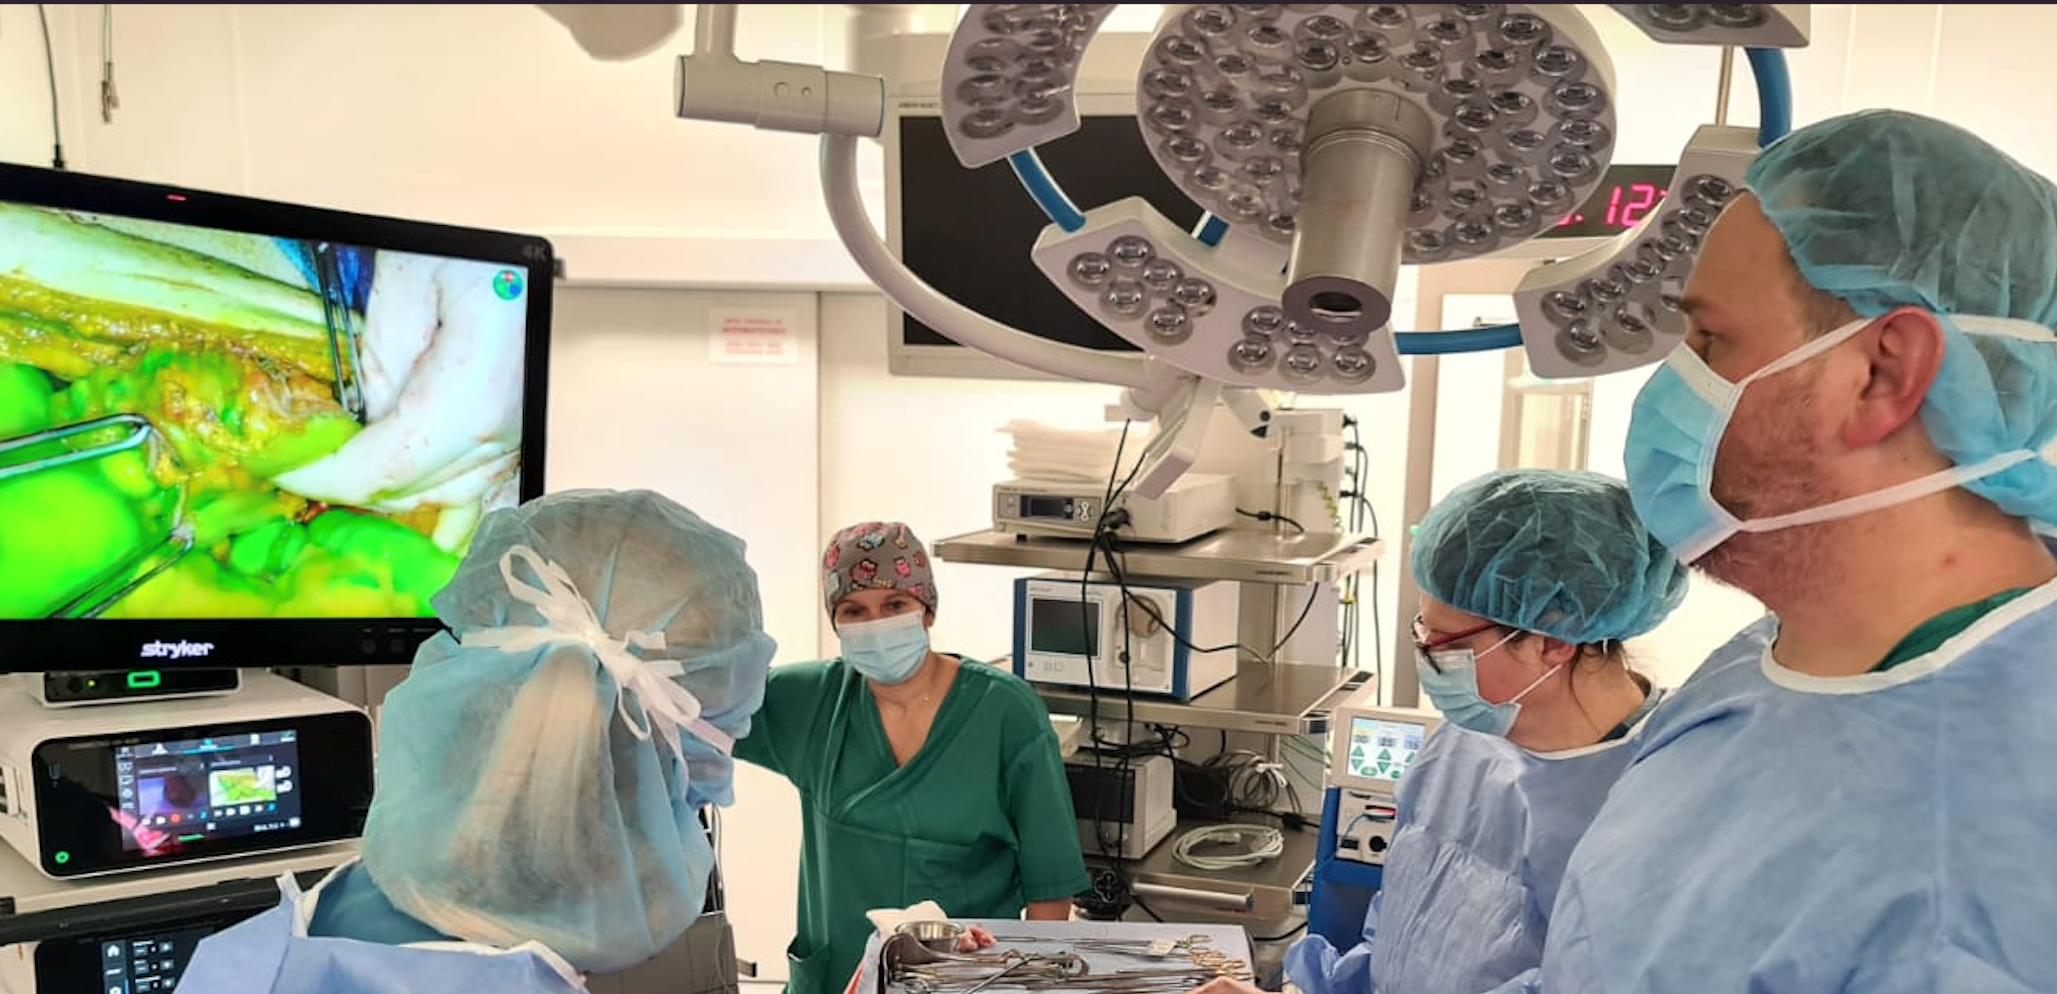 Ta technologia pozwala na precyzyjne zabiegi operacyjne u osób z nowotworem (zdjęcia)